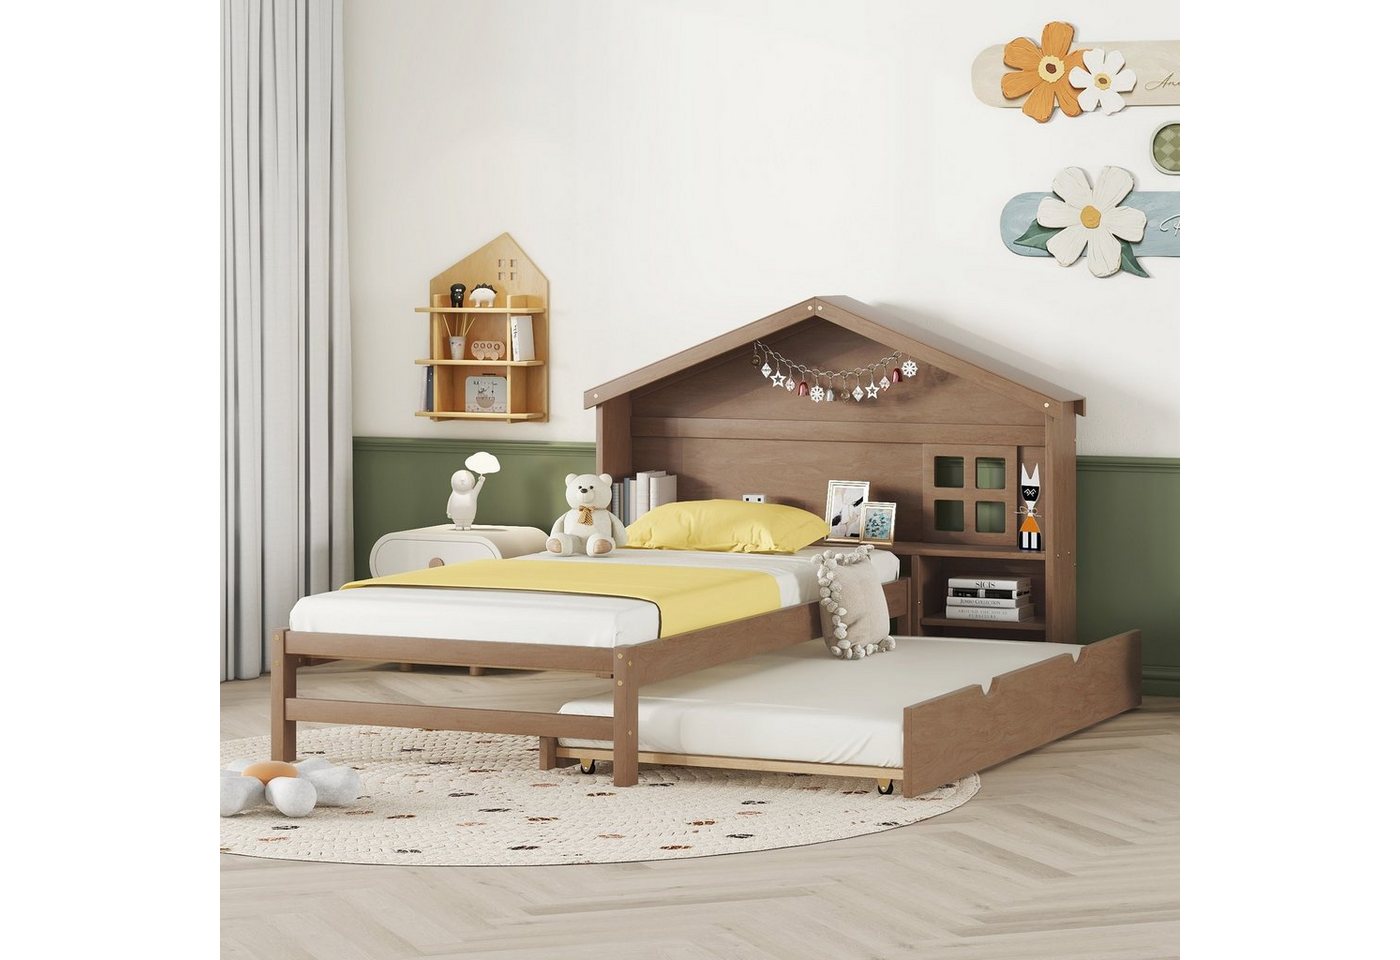 OKWISH Kinderbett hausförmiges, flaches Bett, kleine Fensterdekoration, Lagerregal (90*200cm), ohne Matratze von OKWISH